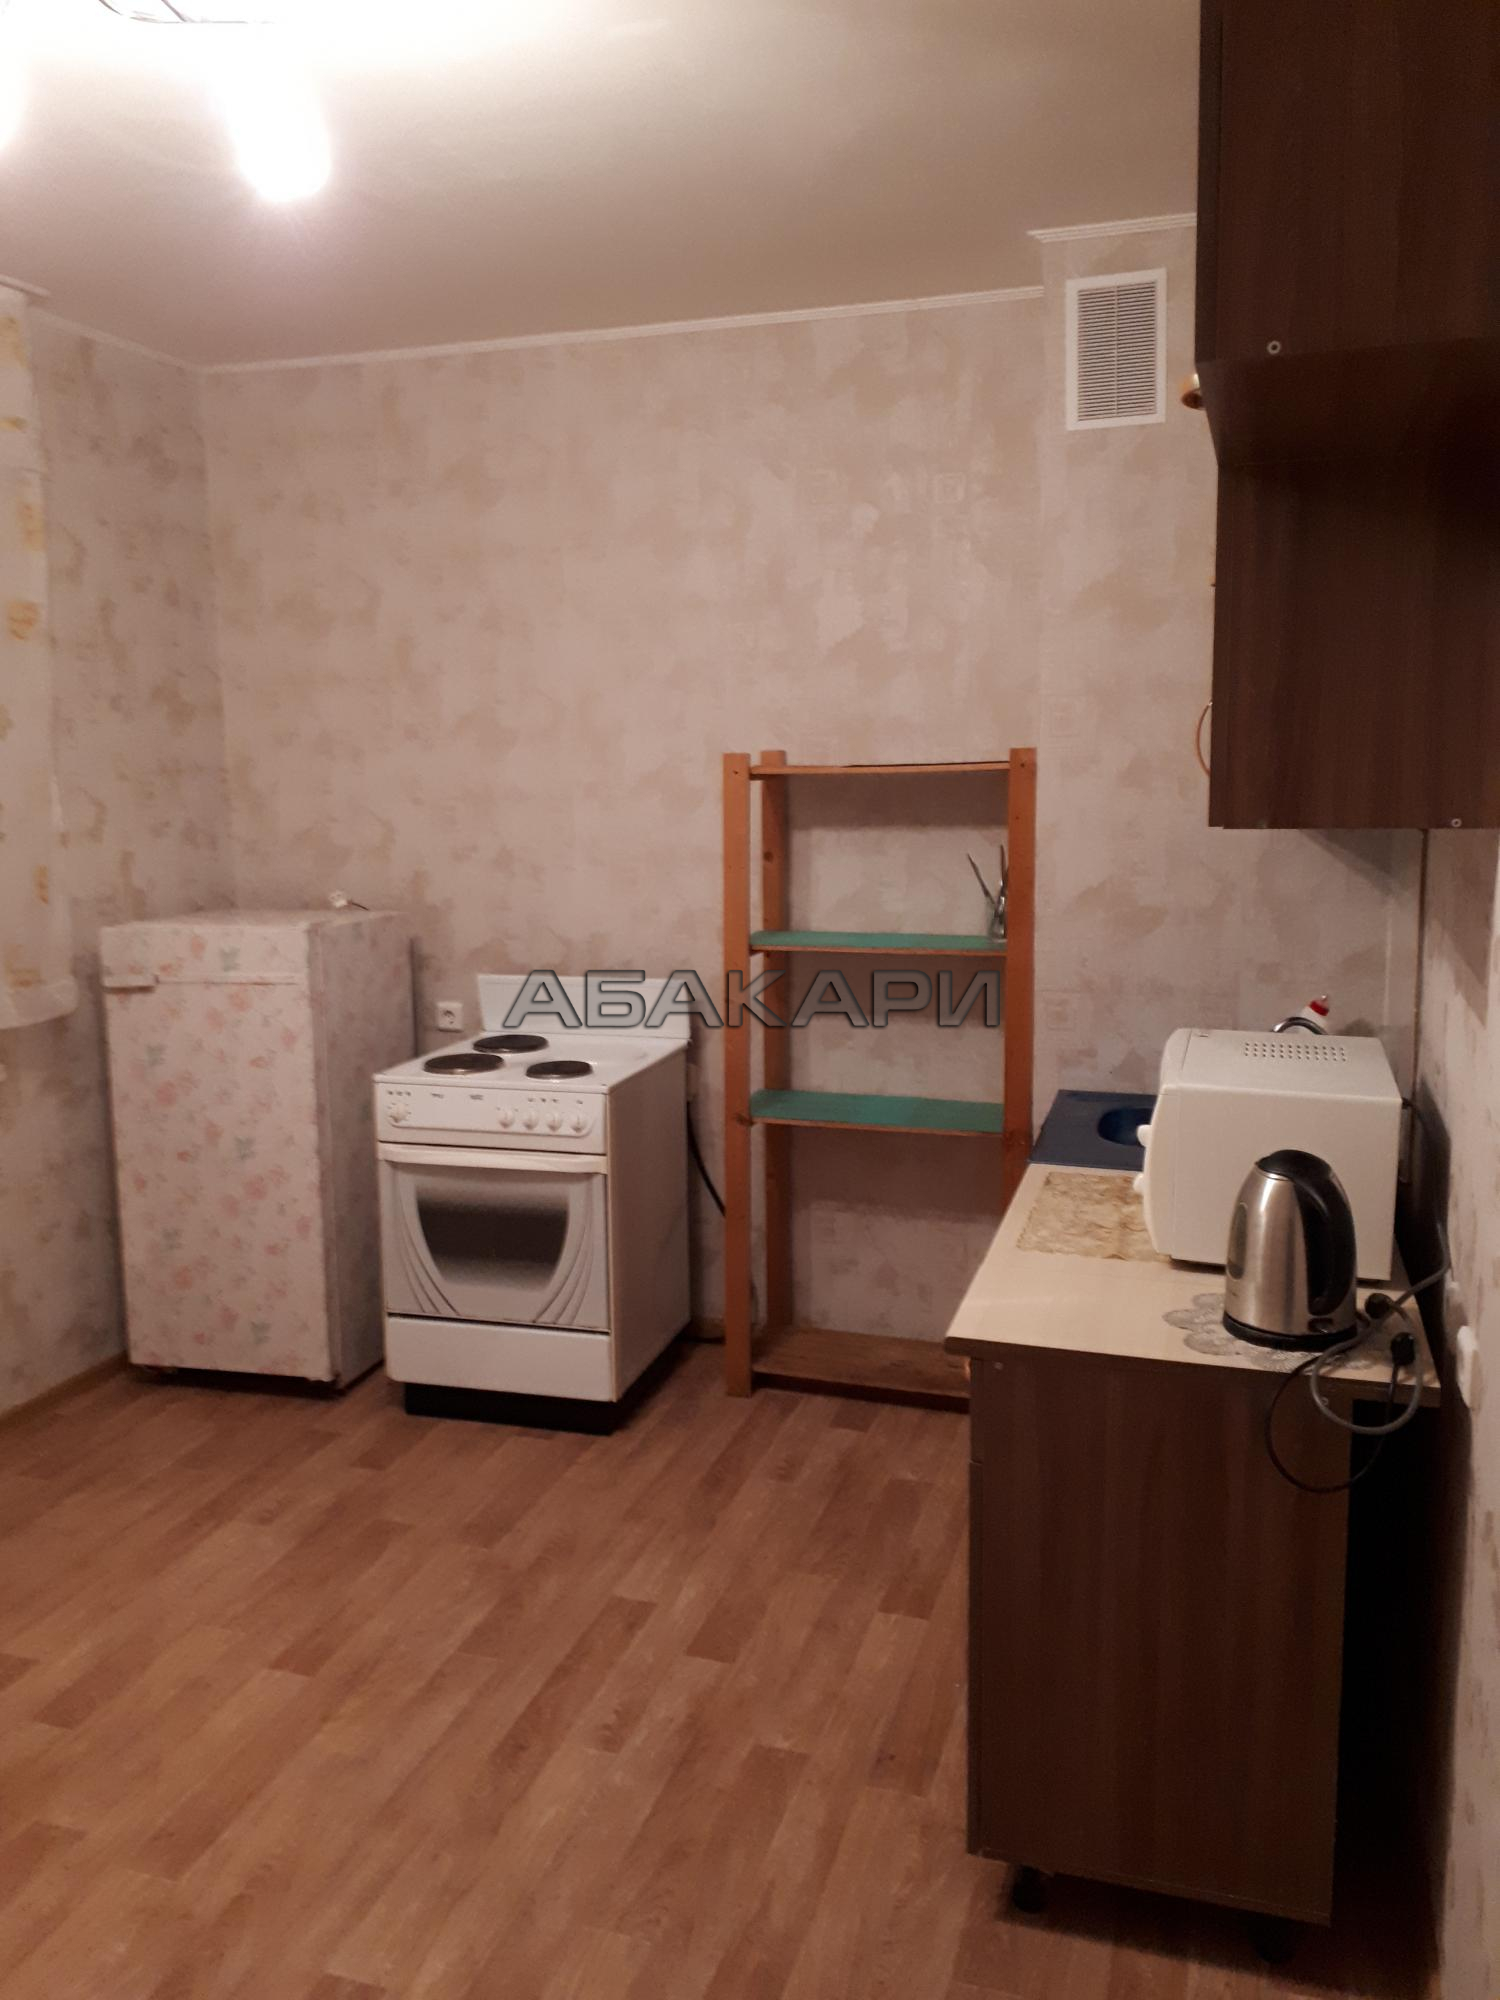 2-комнатная улица Батурина, 40  за 18000 руб/мес фото 4